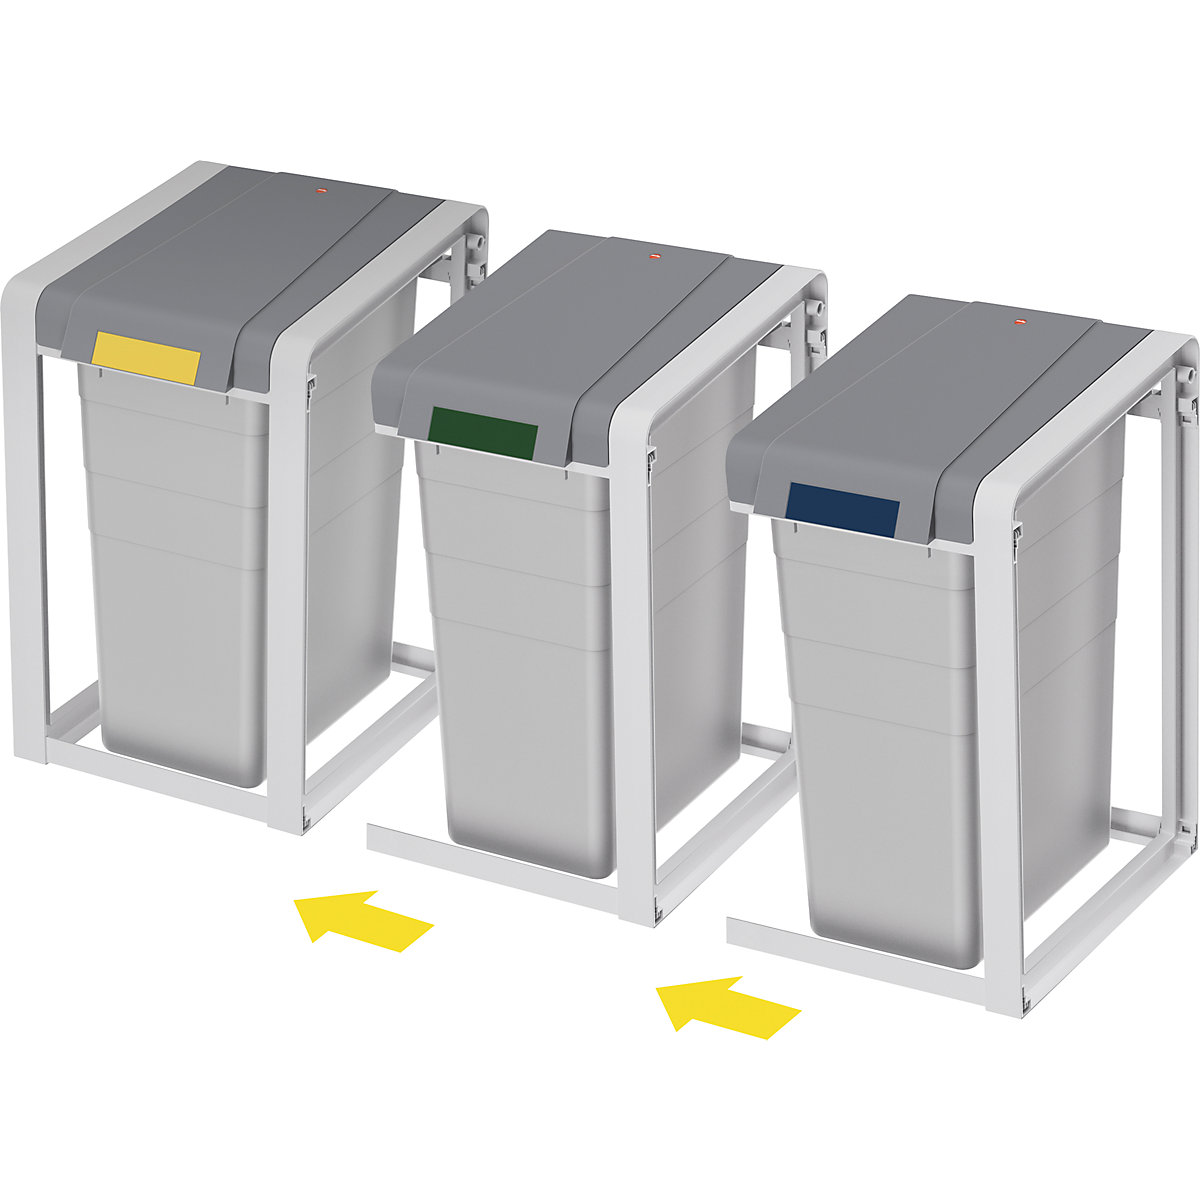 Sistema modular de recipientes para separar materiales ProfiLine, ecológico y flexible – Hailo